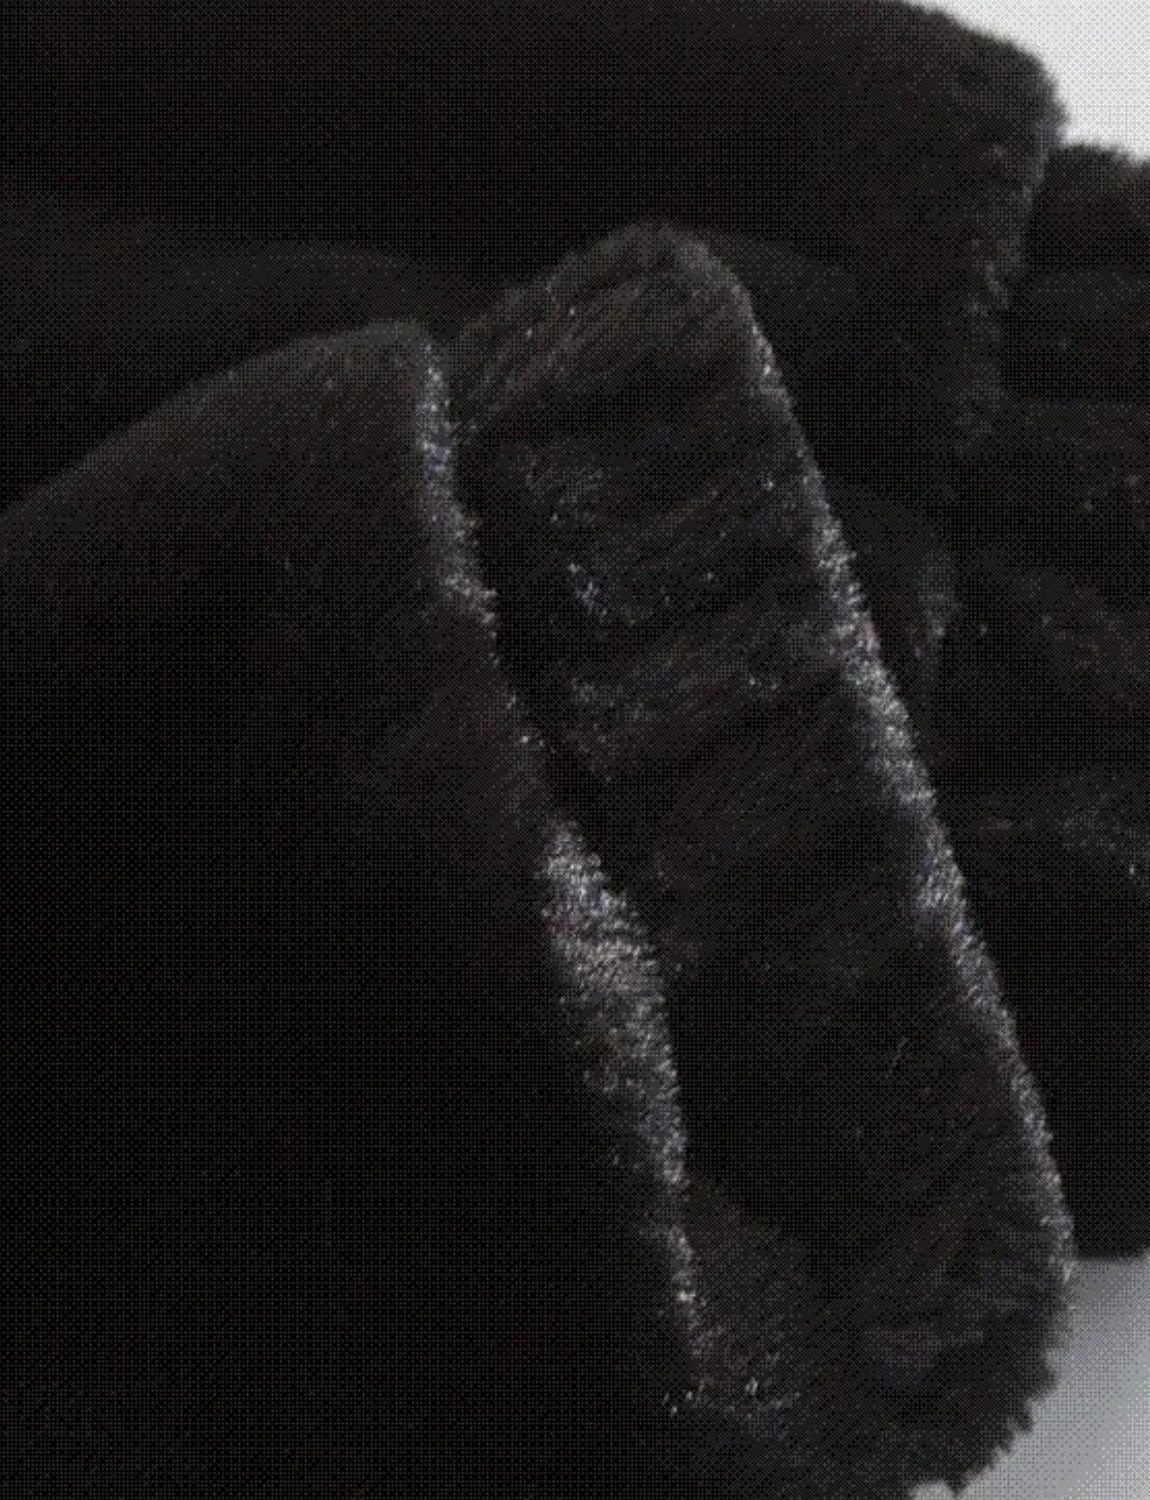 FSW® Heavy loose Black Fur Jacket